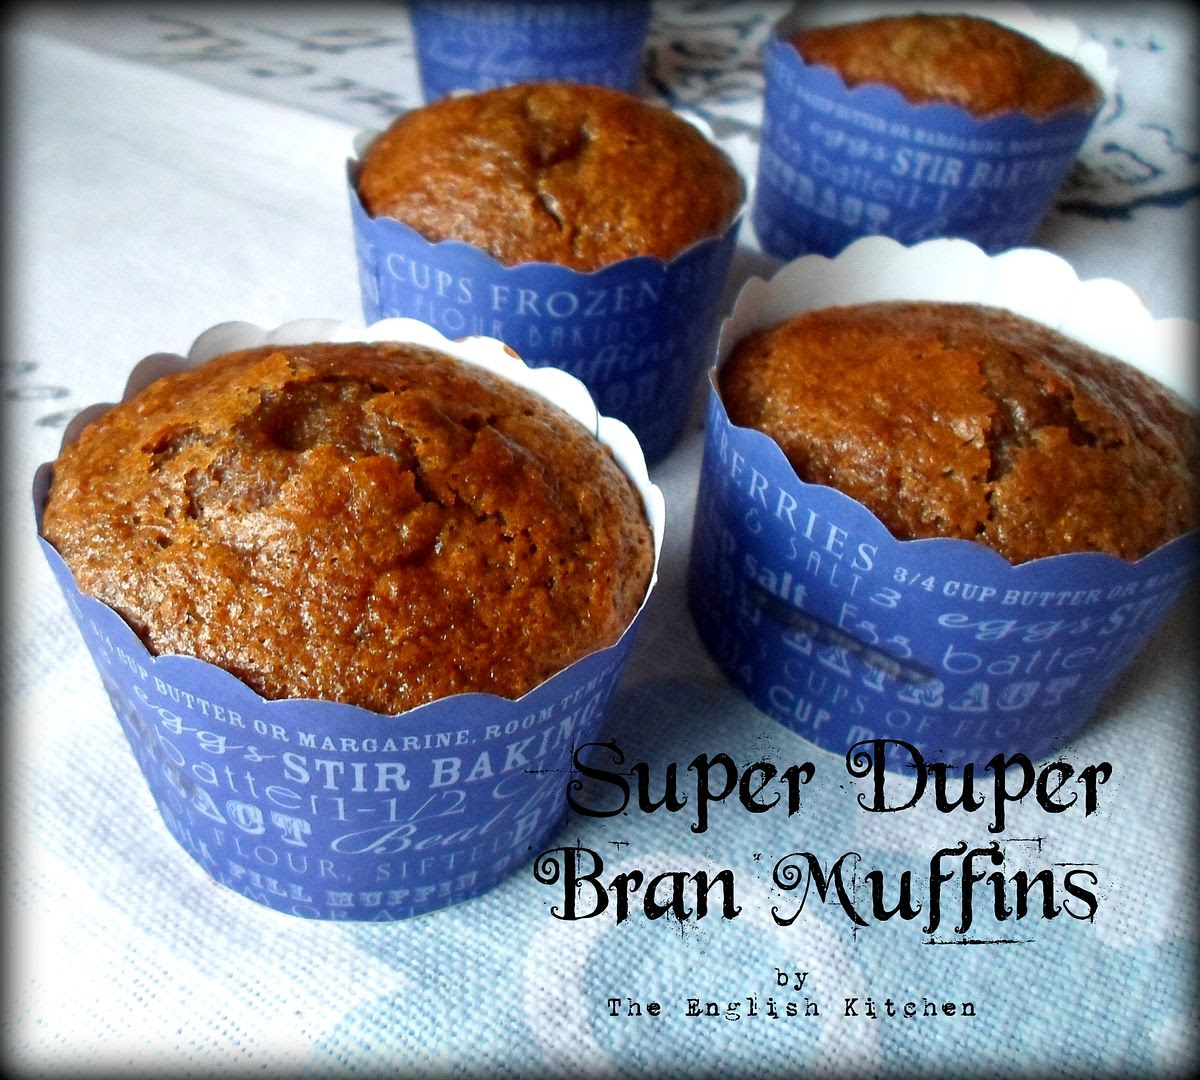 Super Duper Bran Muffins